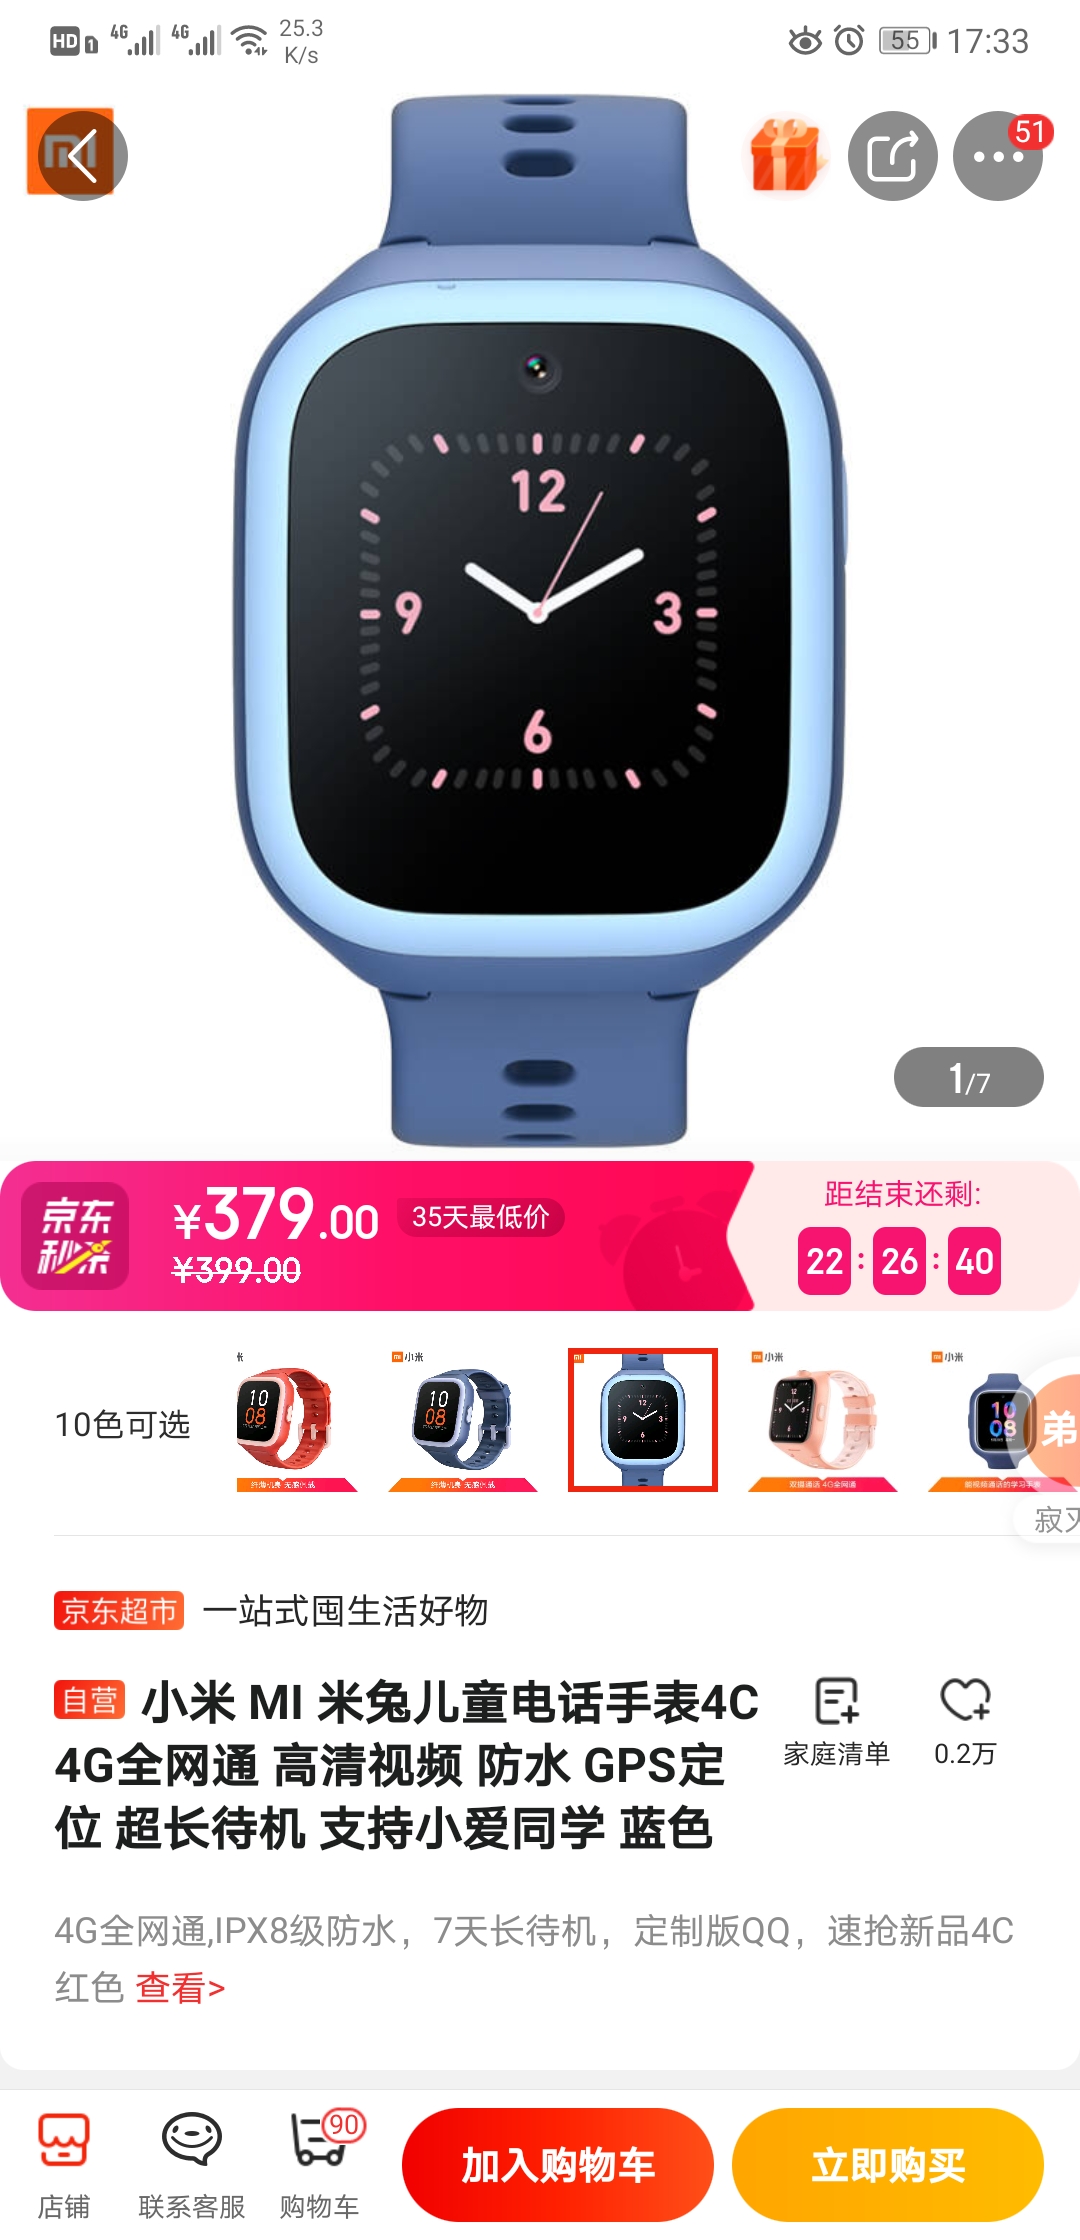 米兔手表app有苹果版米兔手表破解安装第三方的软件